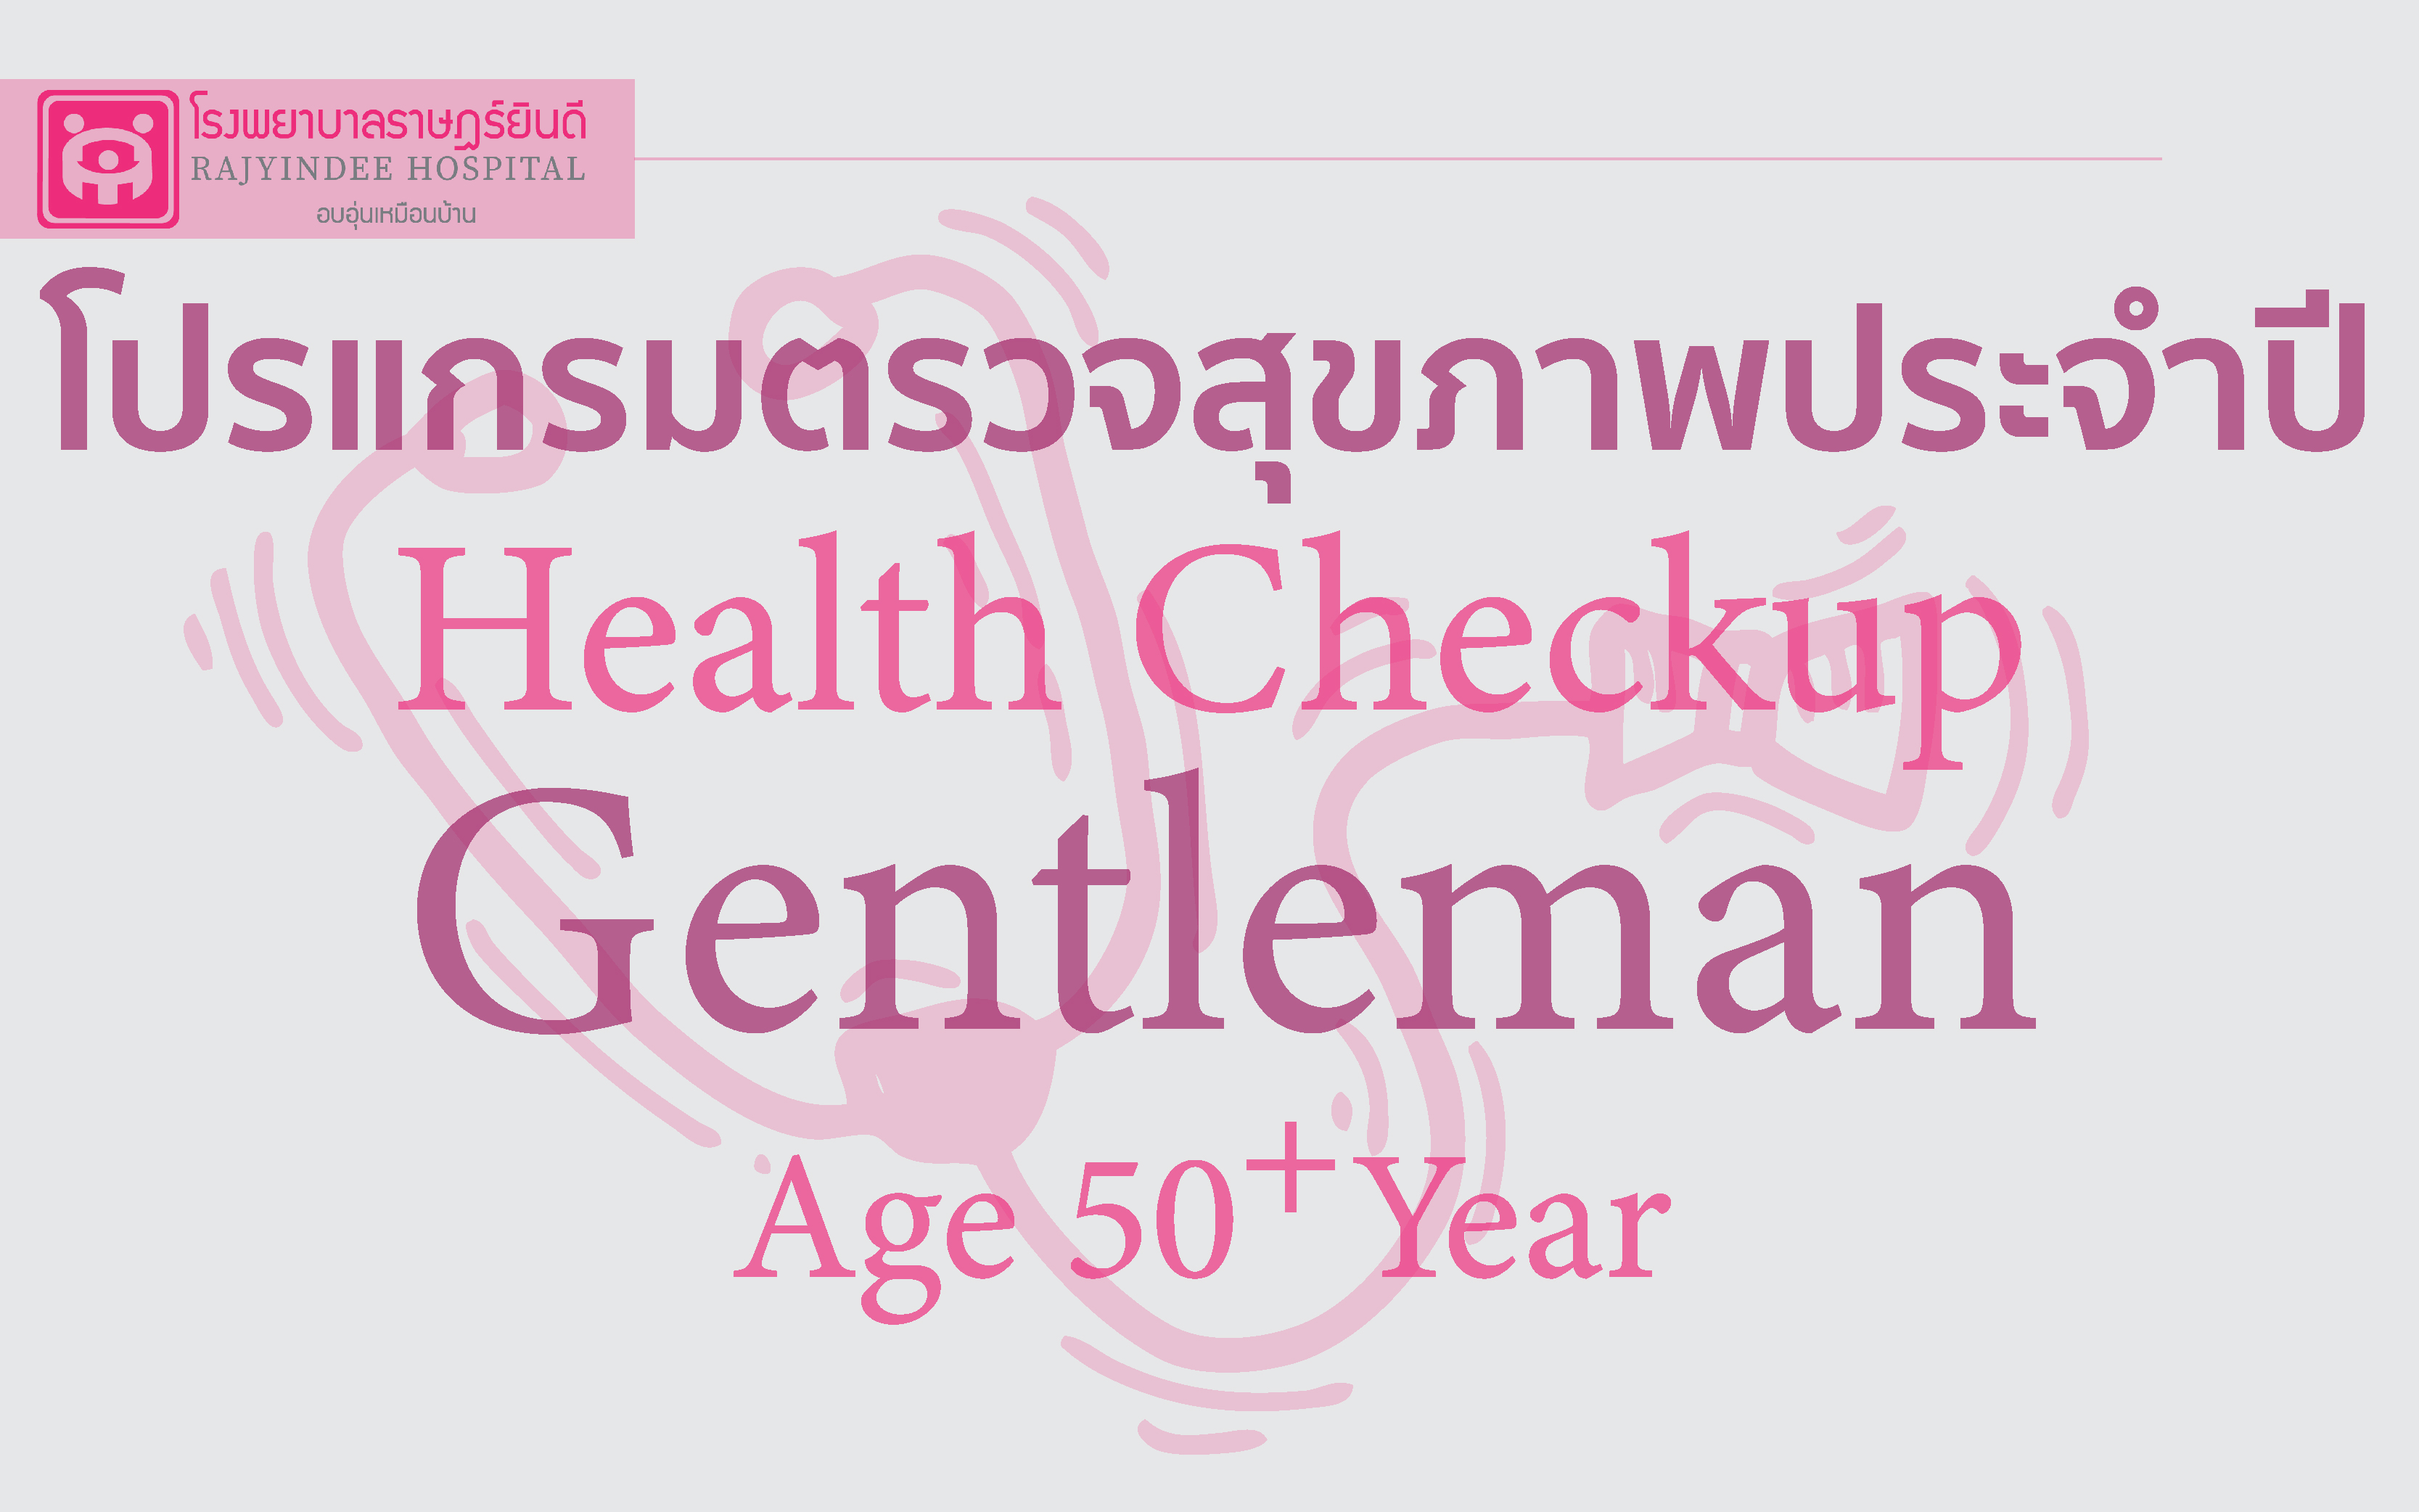 โปรแกรมตรวจสุขภาพ Gentleman (ชายอายุ 50 ปี ขึ้นไป) 